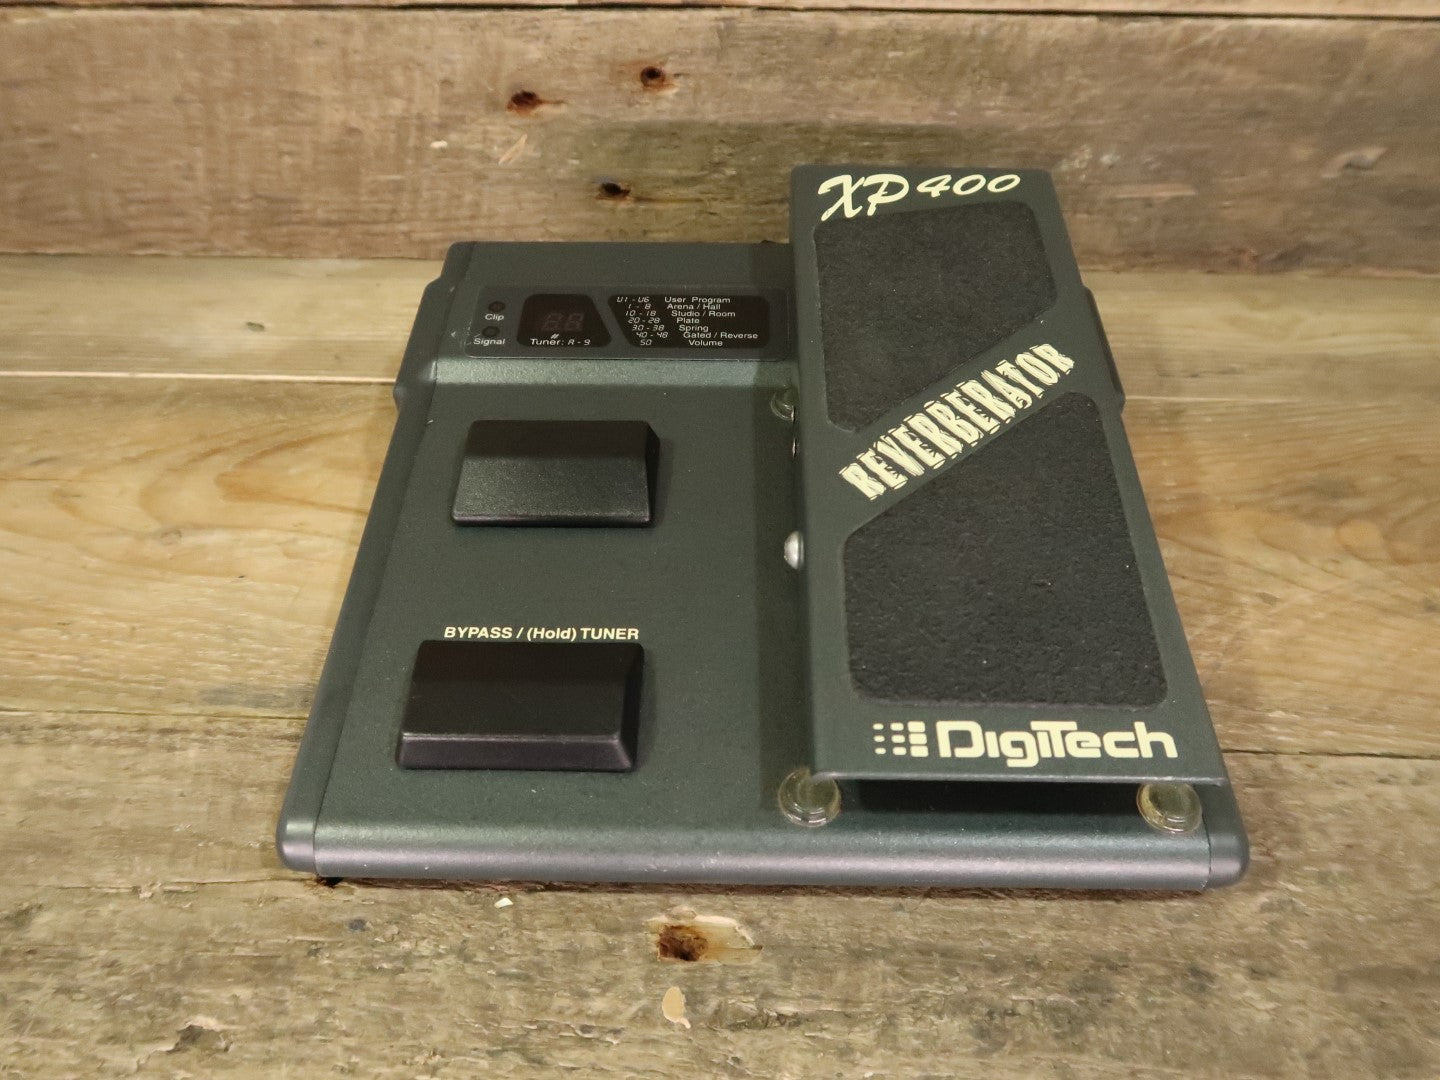 DigiTech XP400 Reverberator (vintage, s/n KW47IC-10026)